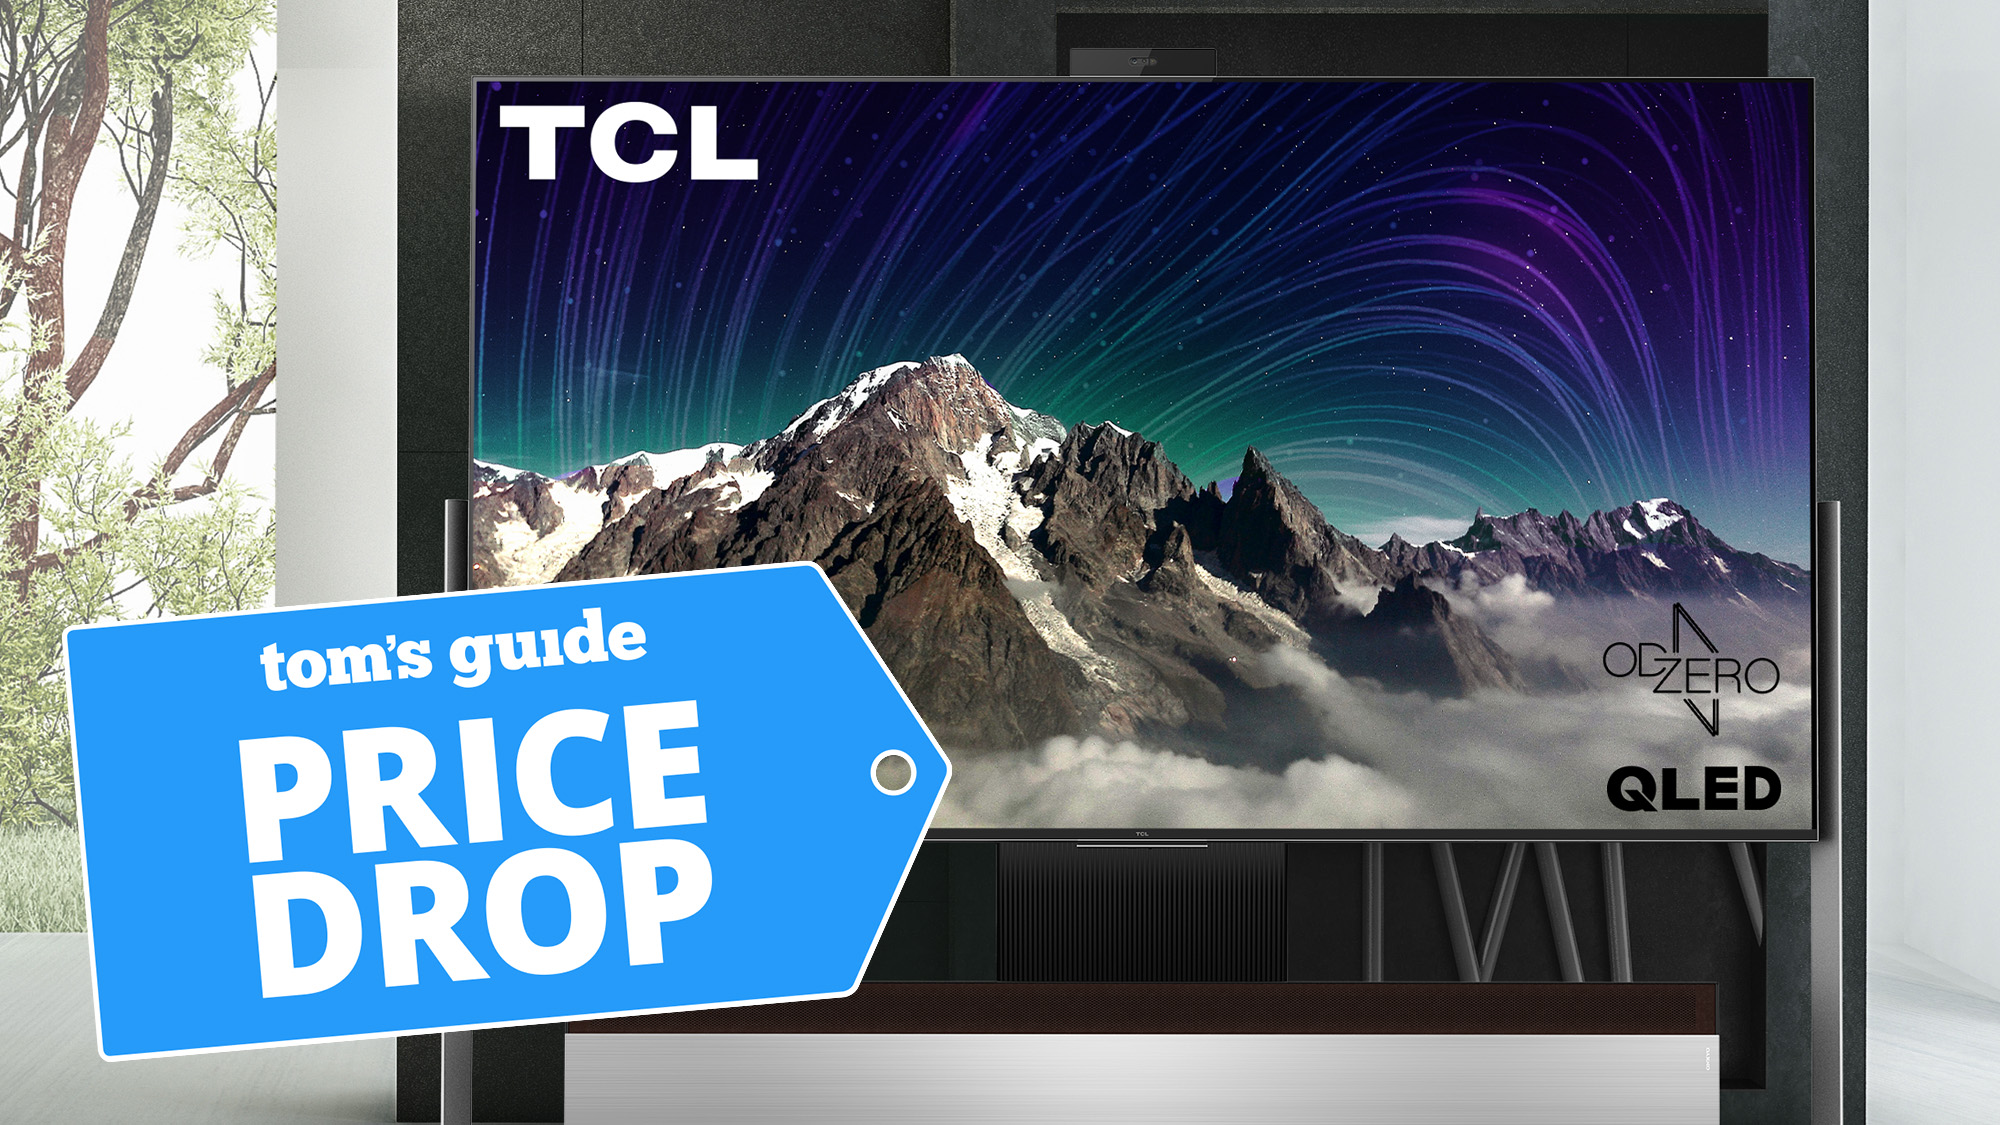 Oferta de televisor TCL 98 XL